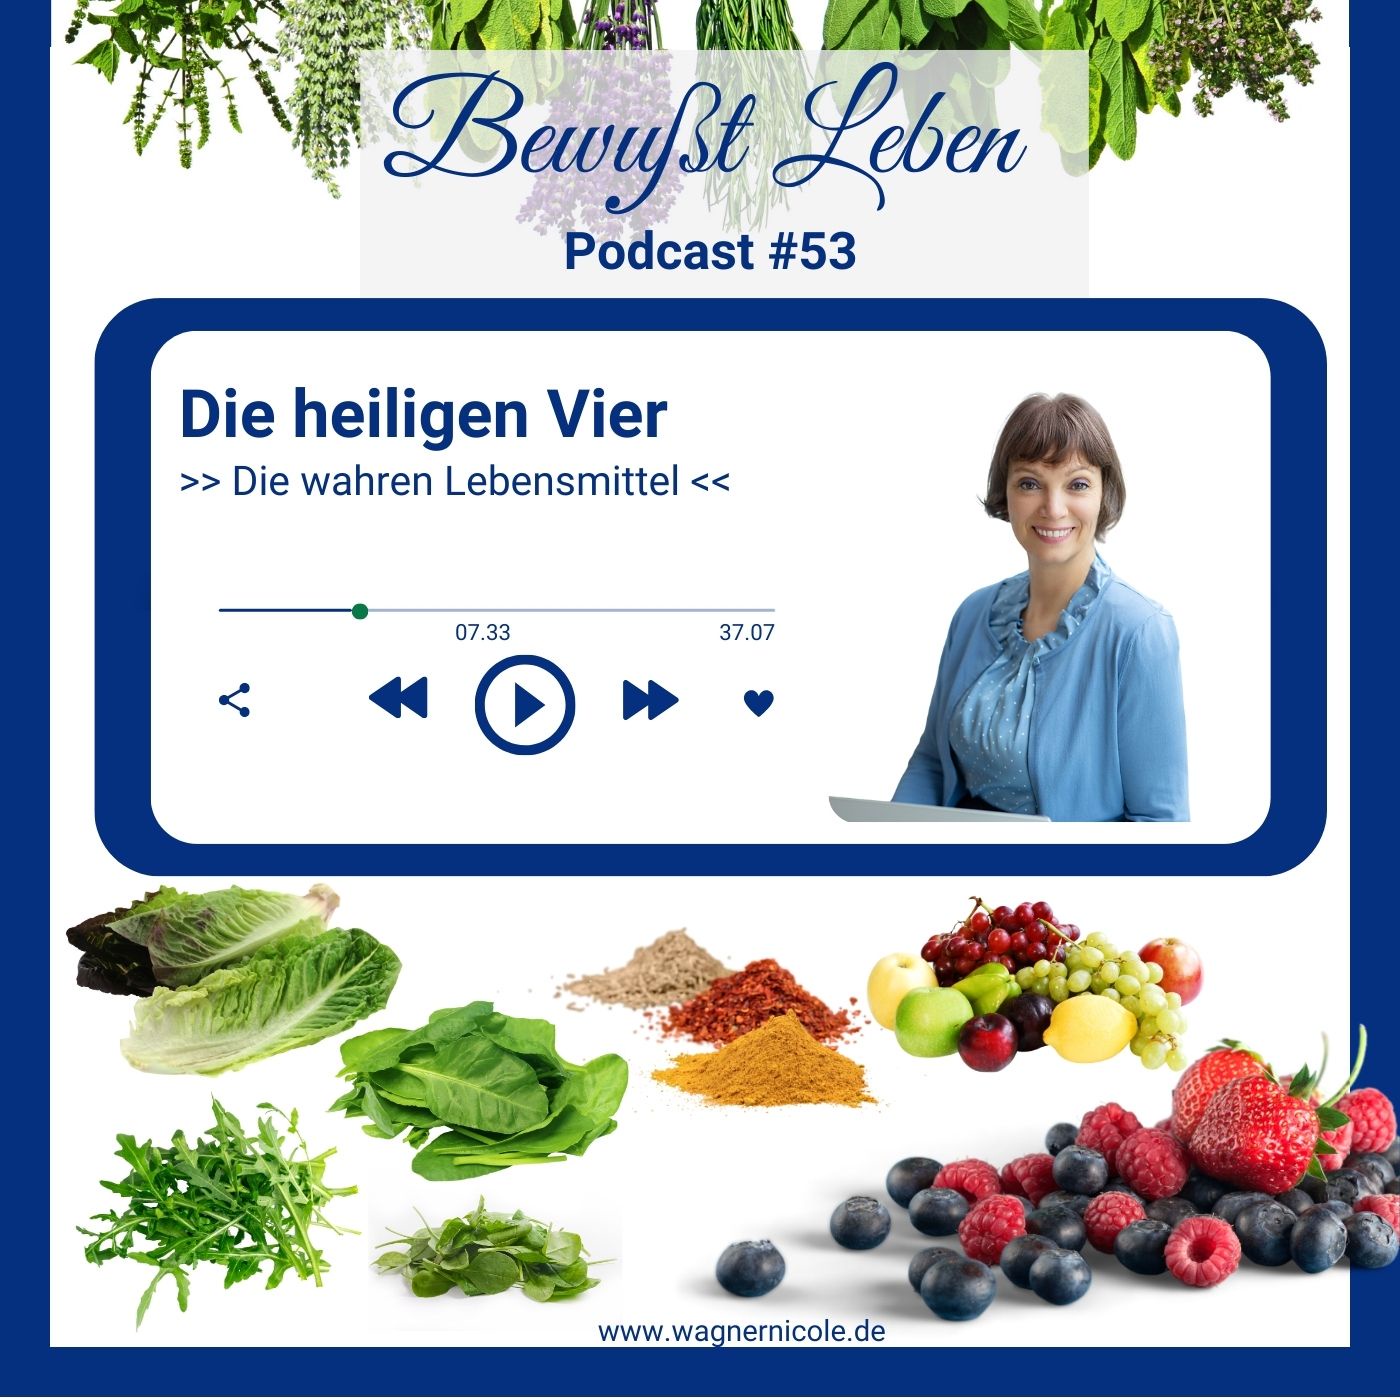 Die heiligen Vier I Die wahren Lebensmittel I Podcast #53